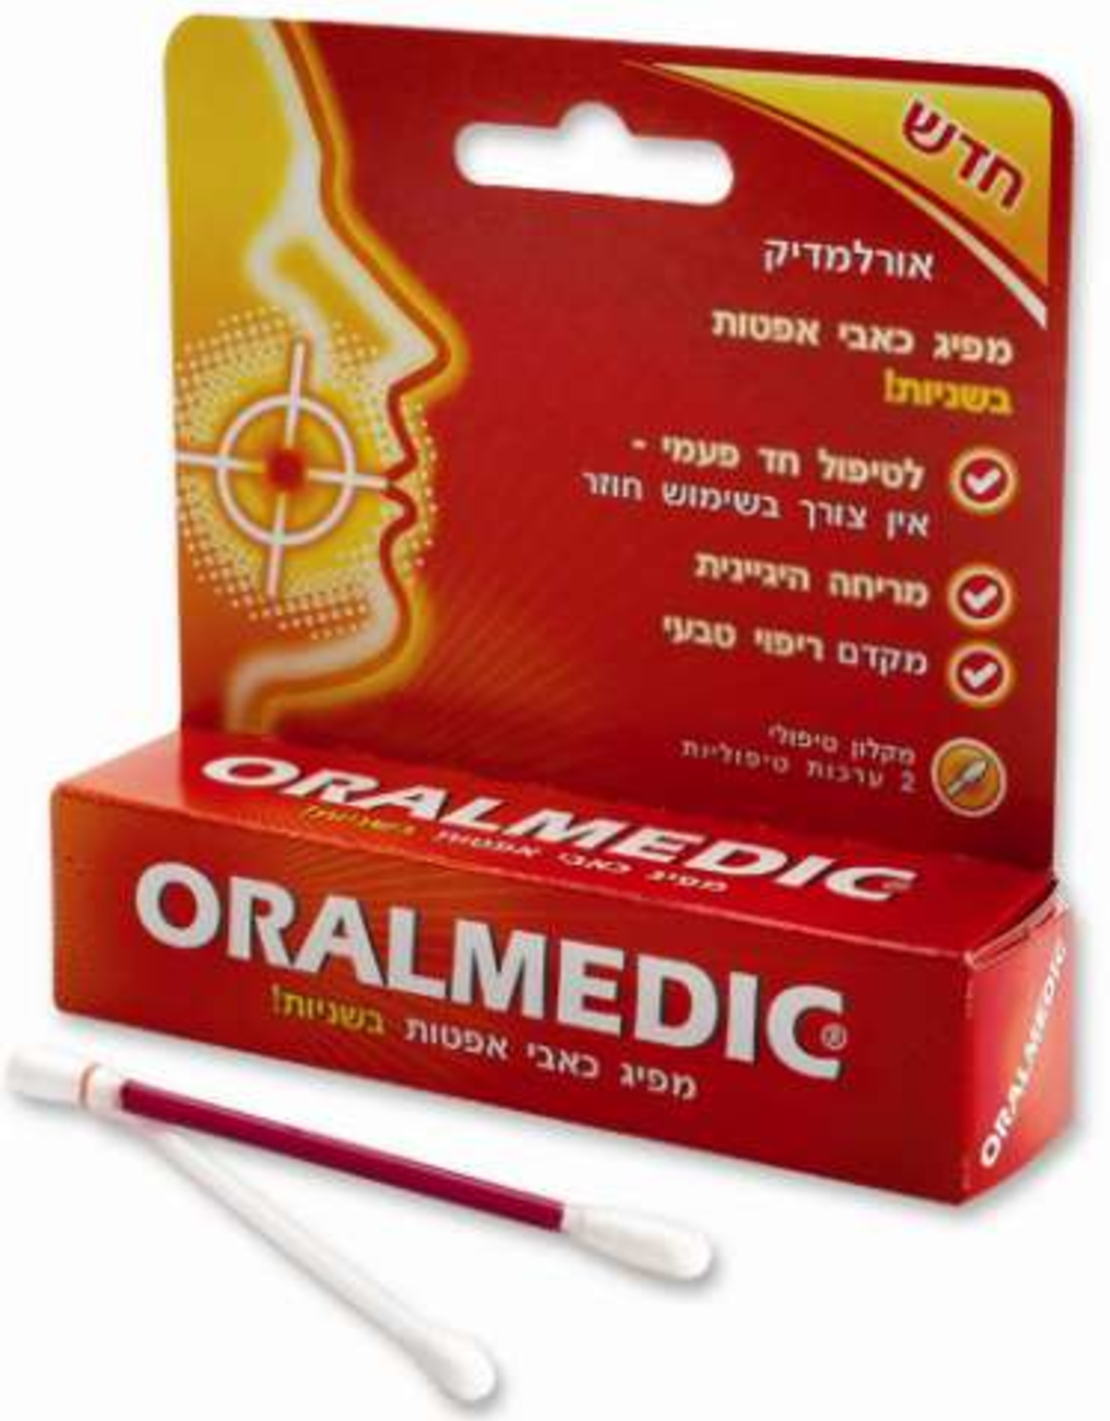 אורלמדיק - טיפול בכאבי אפטות בפה Oralmedic